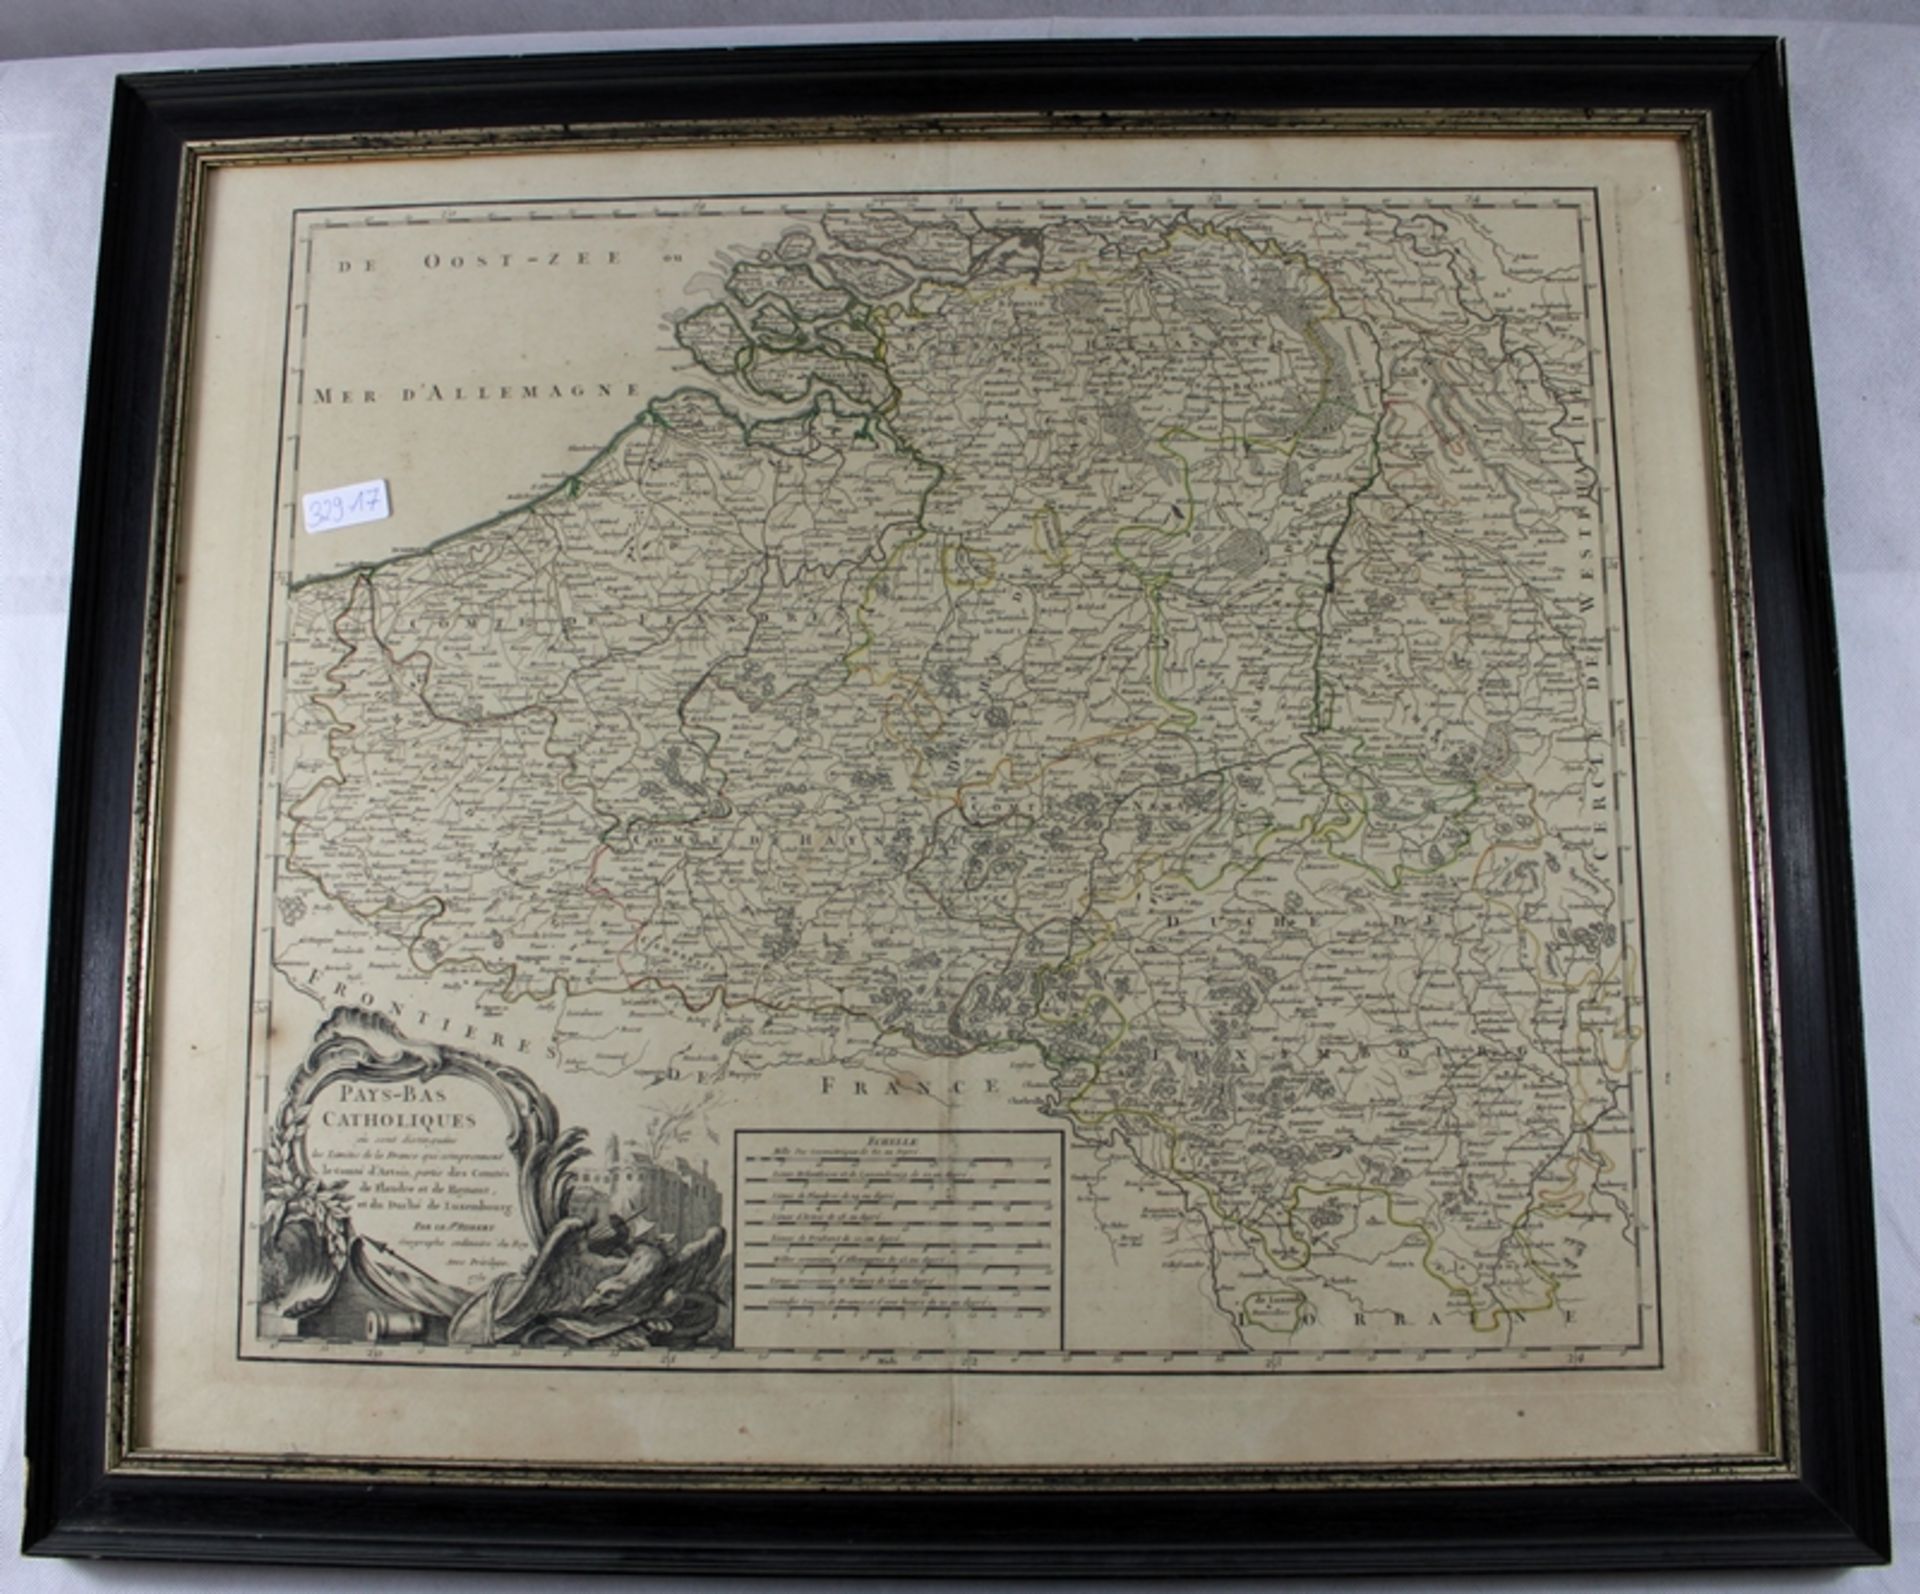 Landkarte kol. Kupferstich "Pays-Bas Catholiques" Robert de Vaugondy 1751, verglast, ca. 71,5 x 62